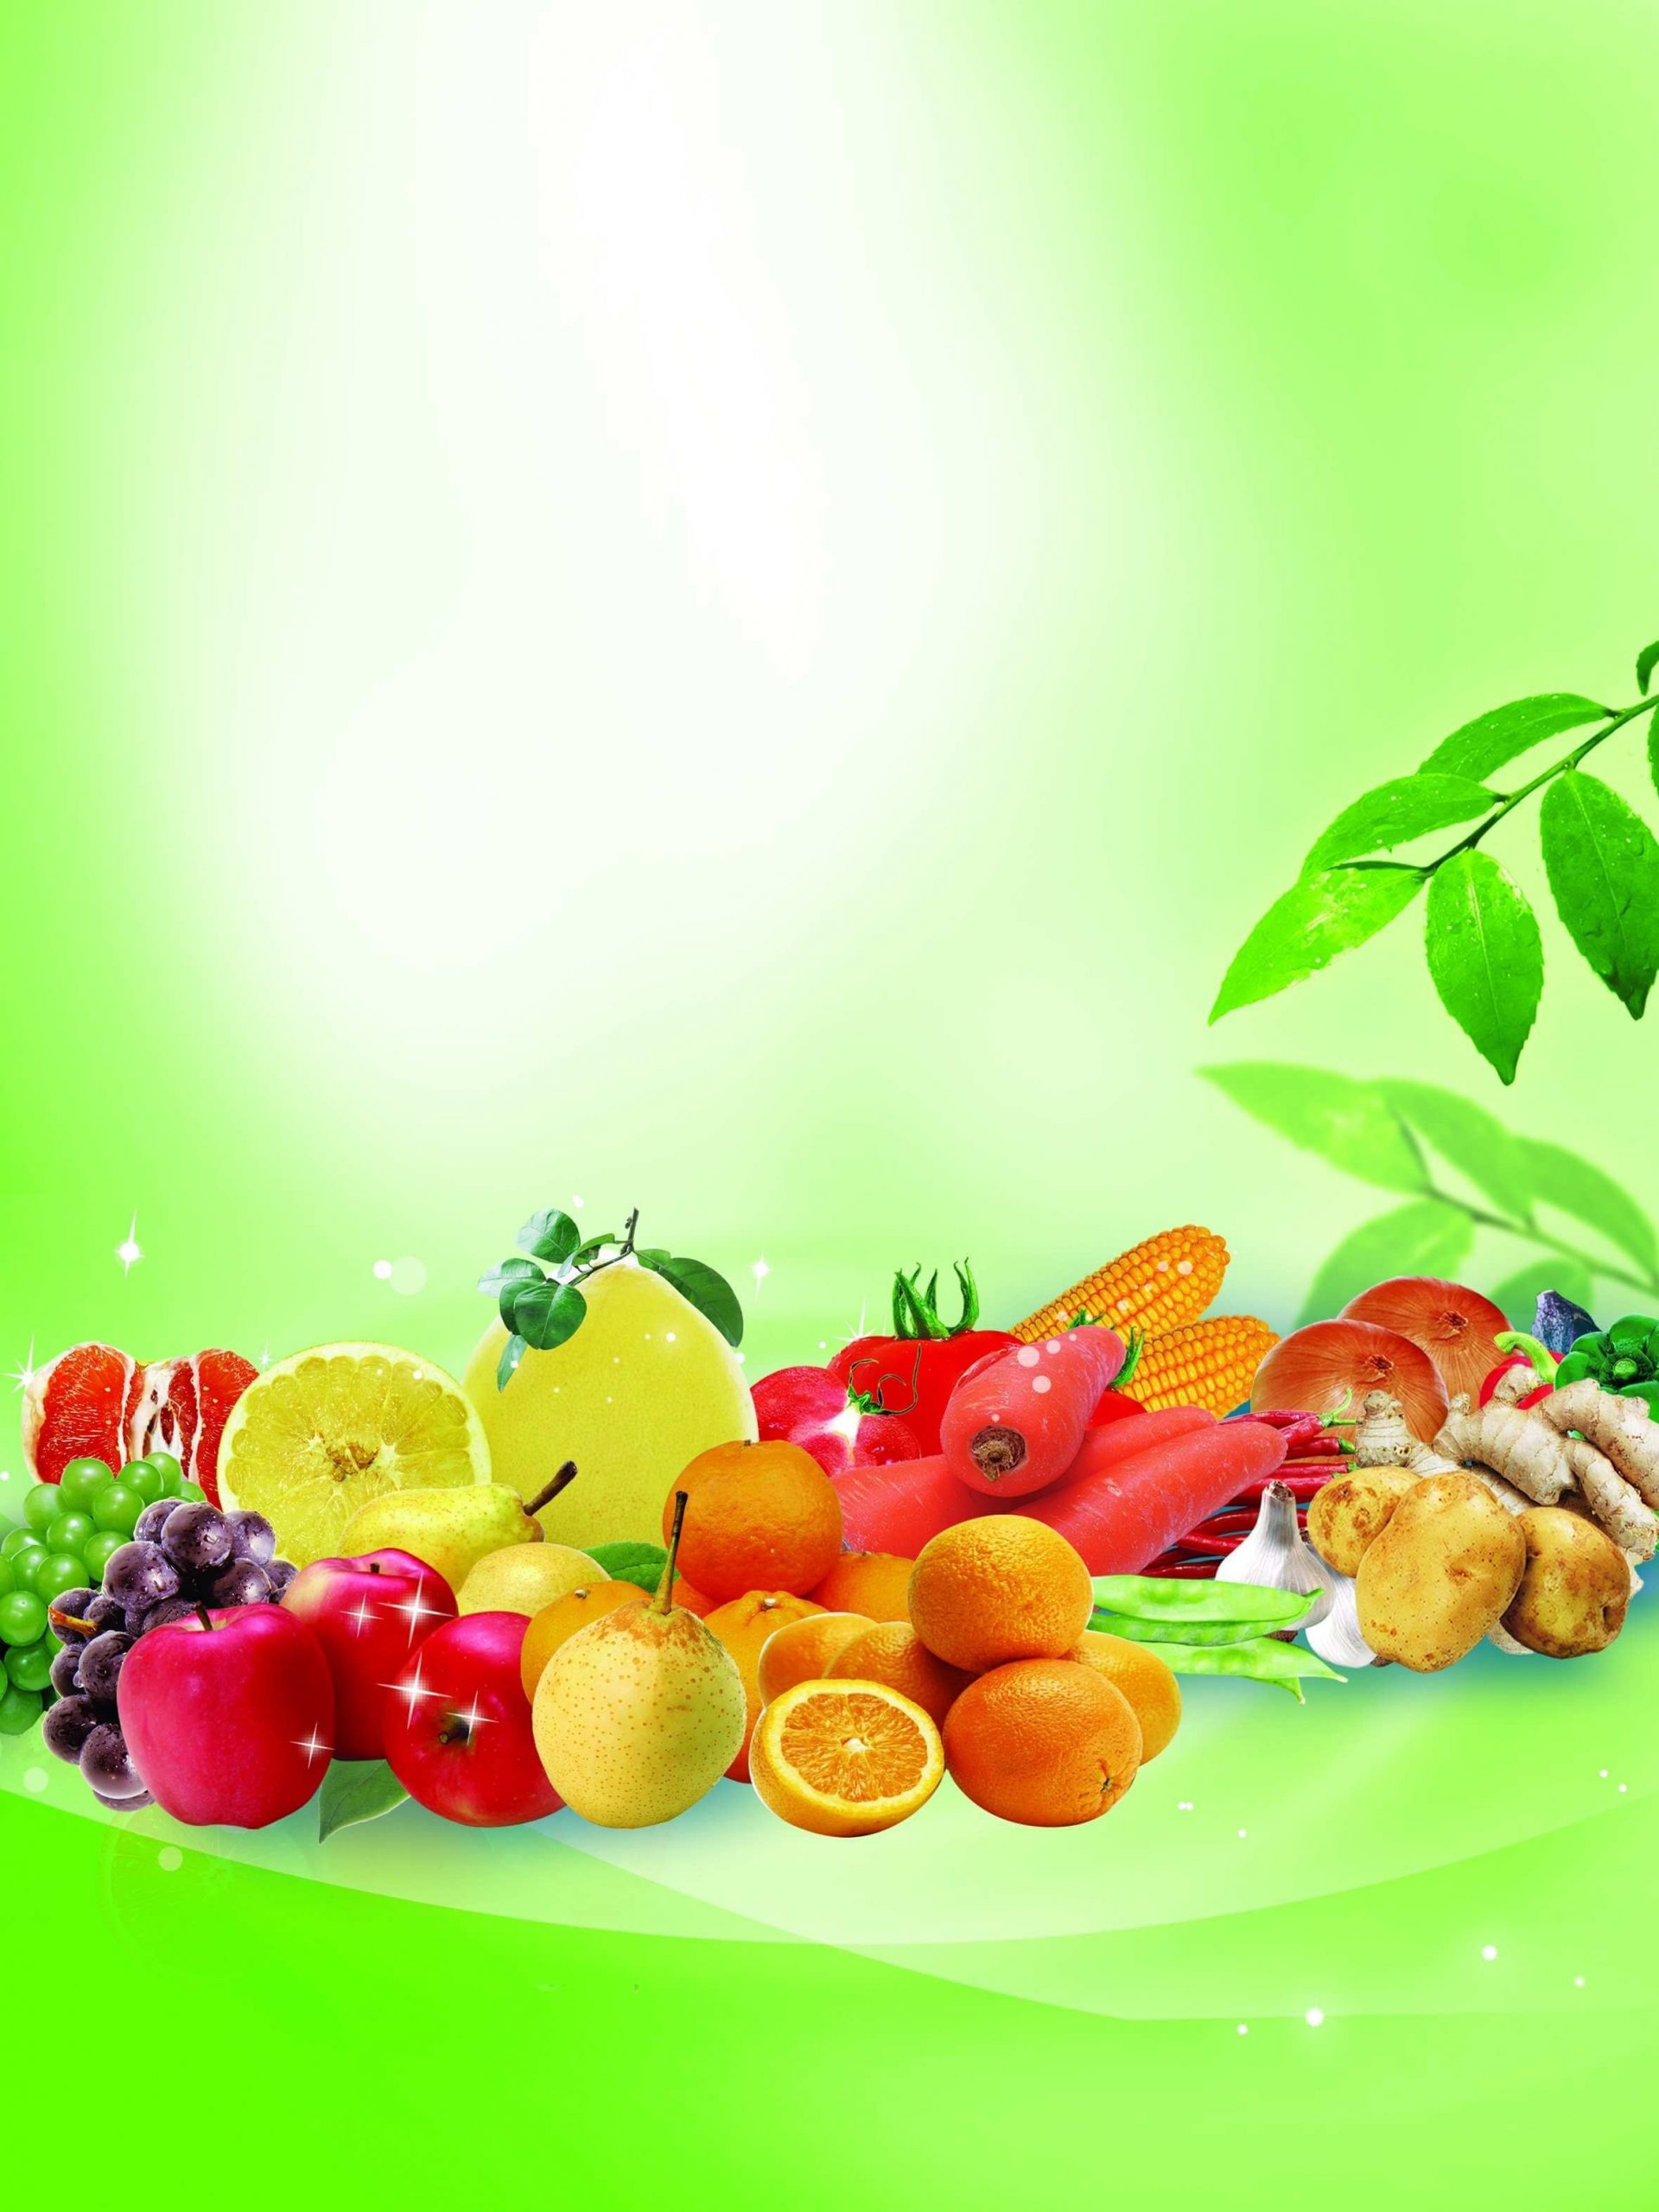 Картинки для детей с фруктами и овощами 006